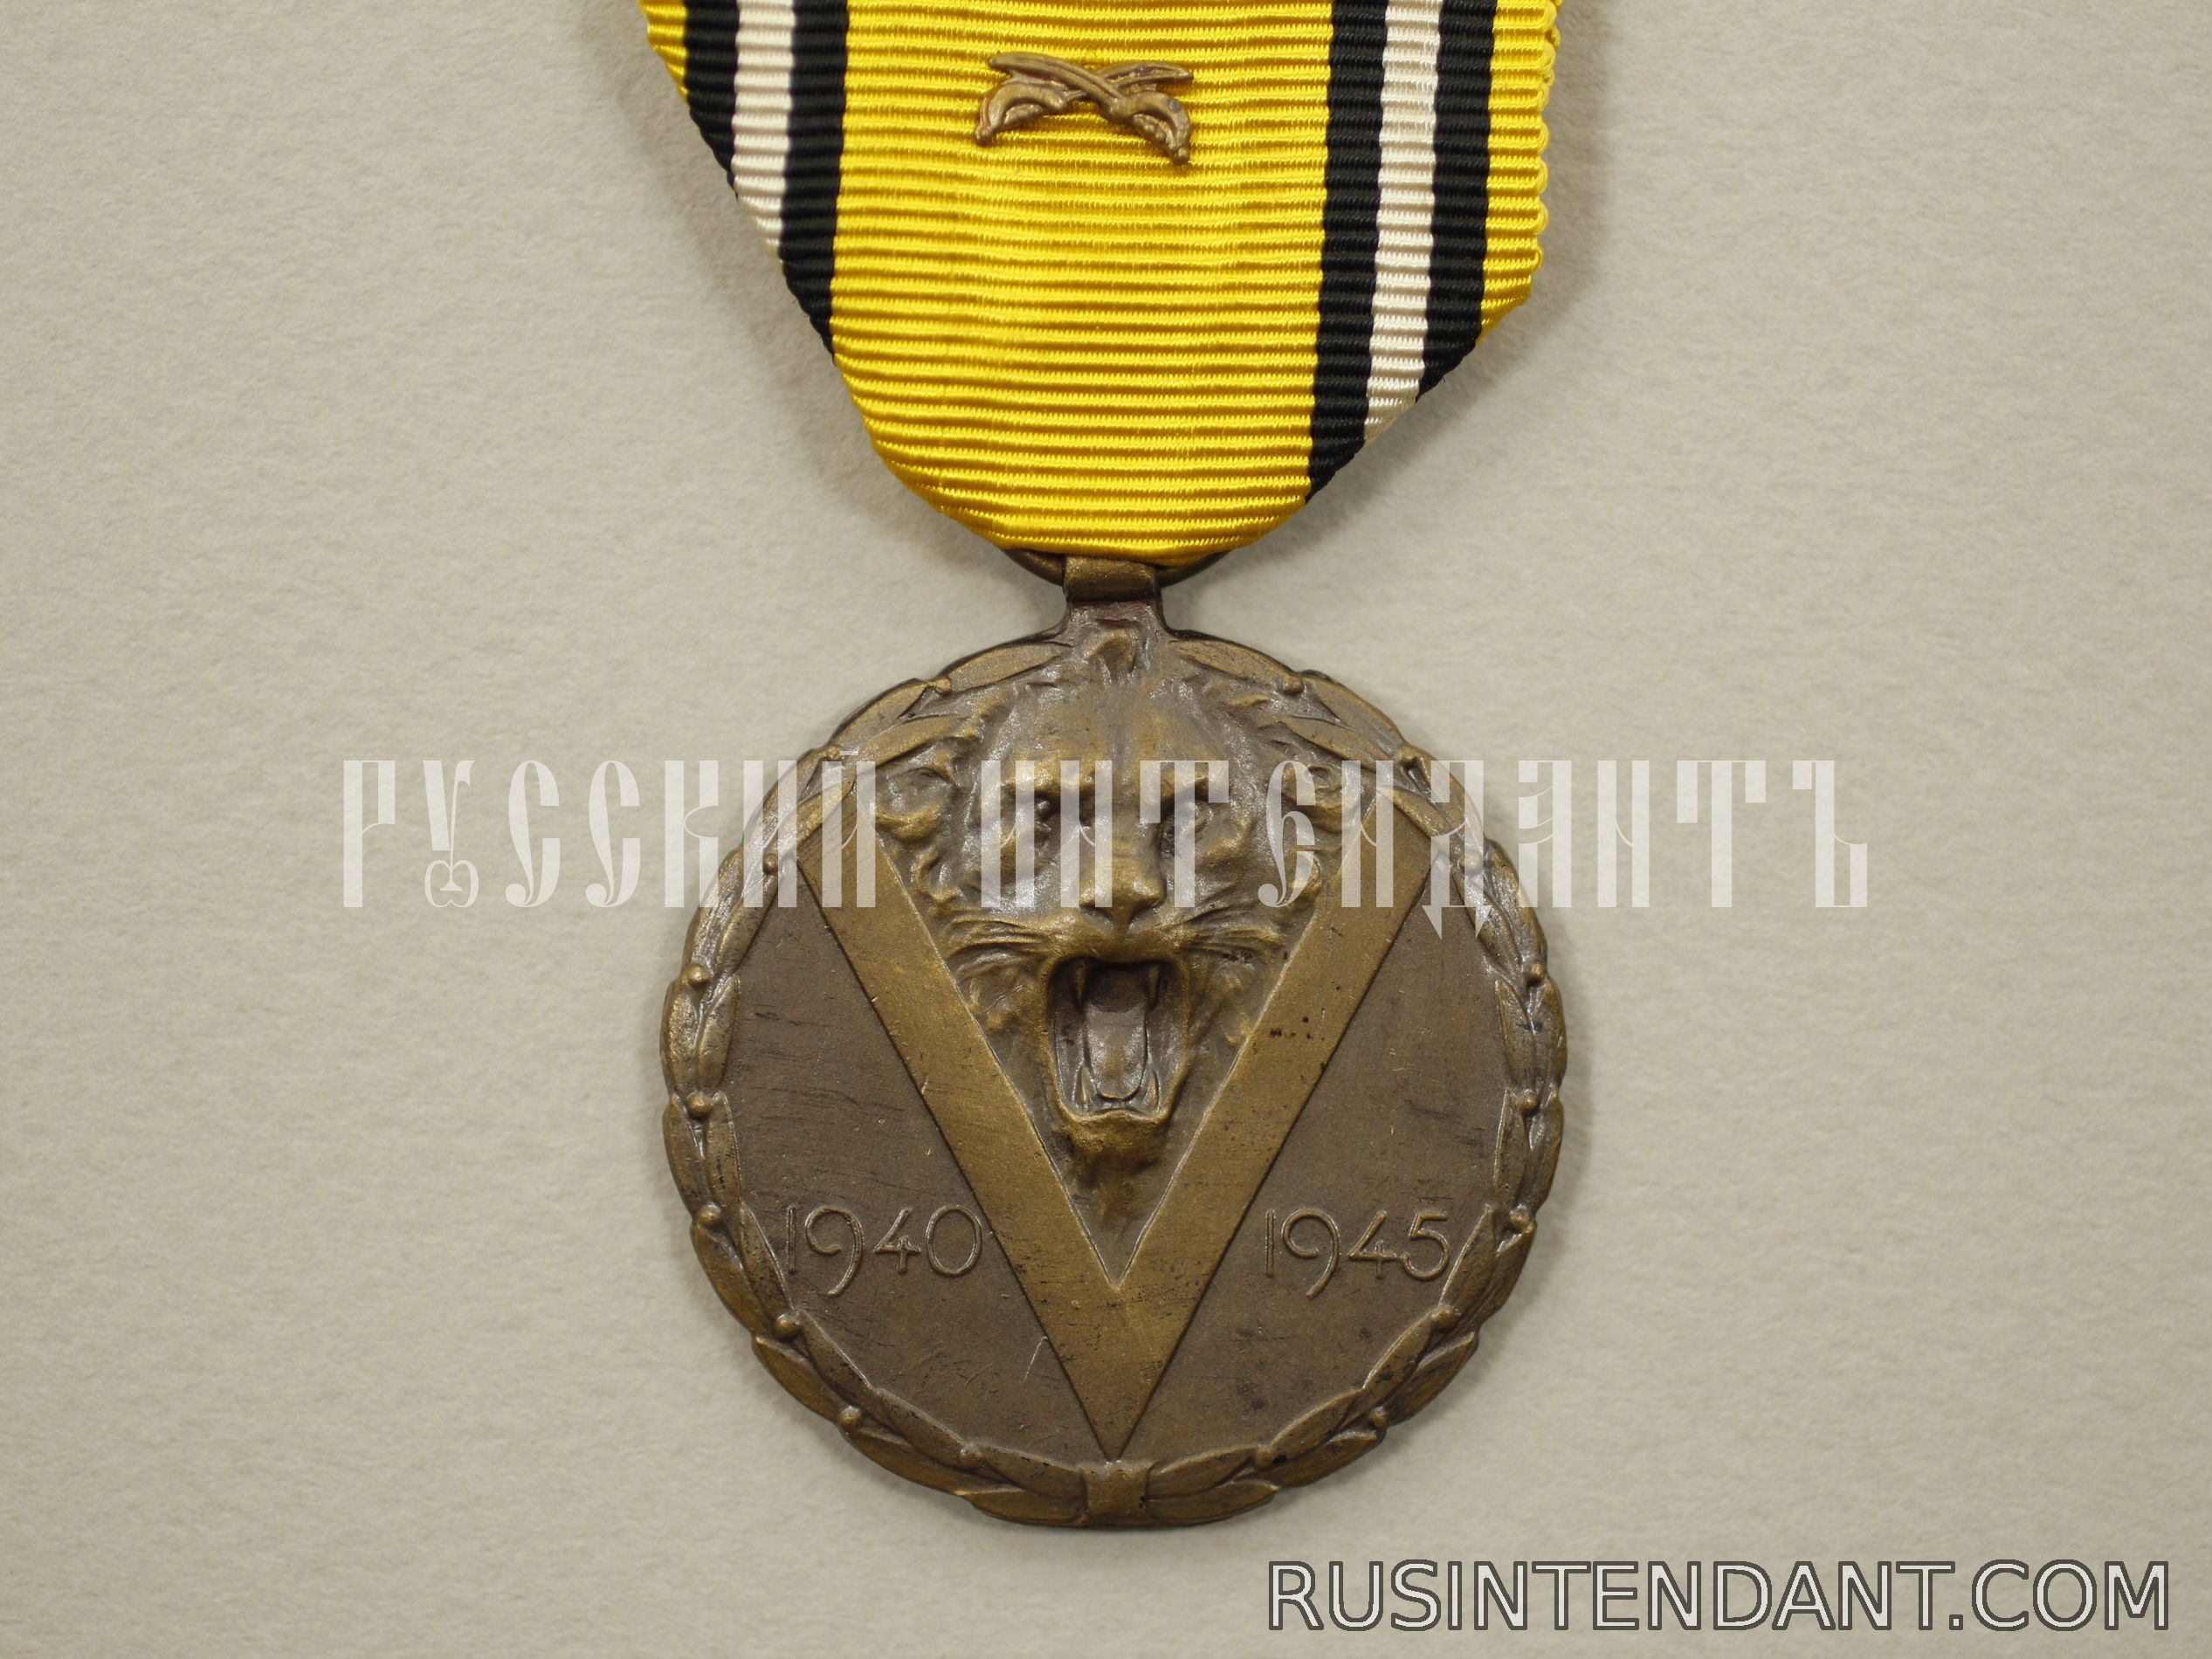 Фото 1: Бельгийская медаль "В память войны 1940-1945" 